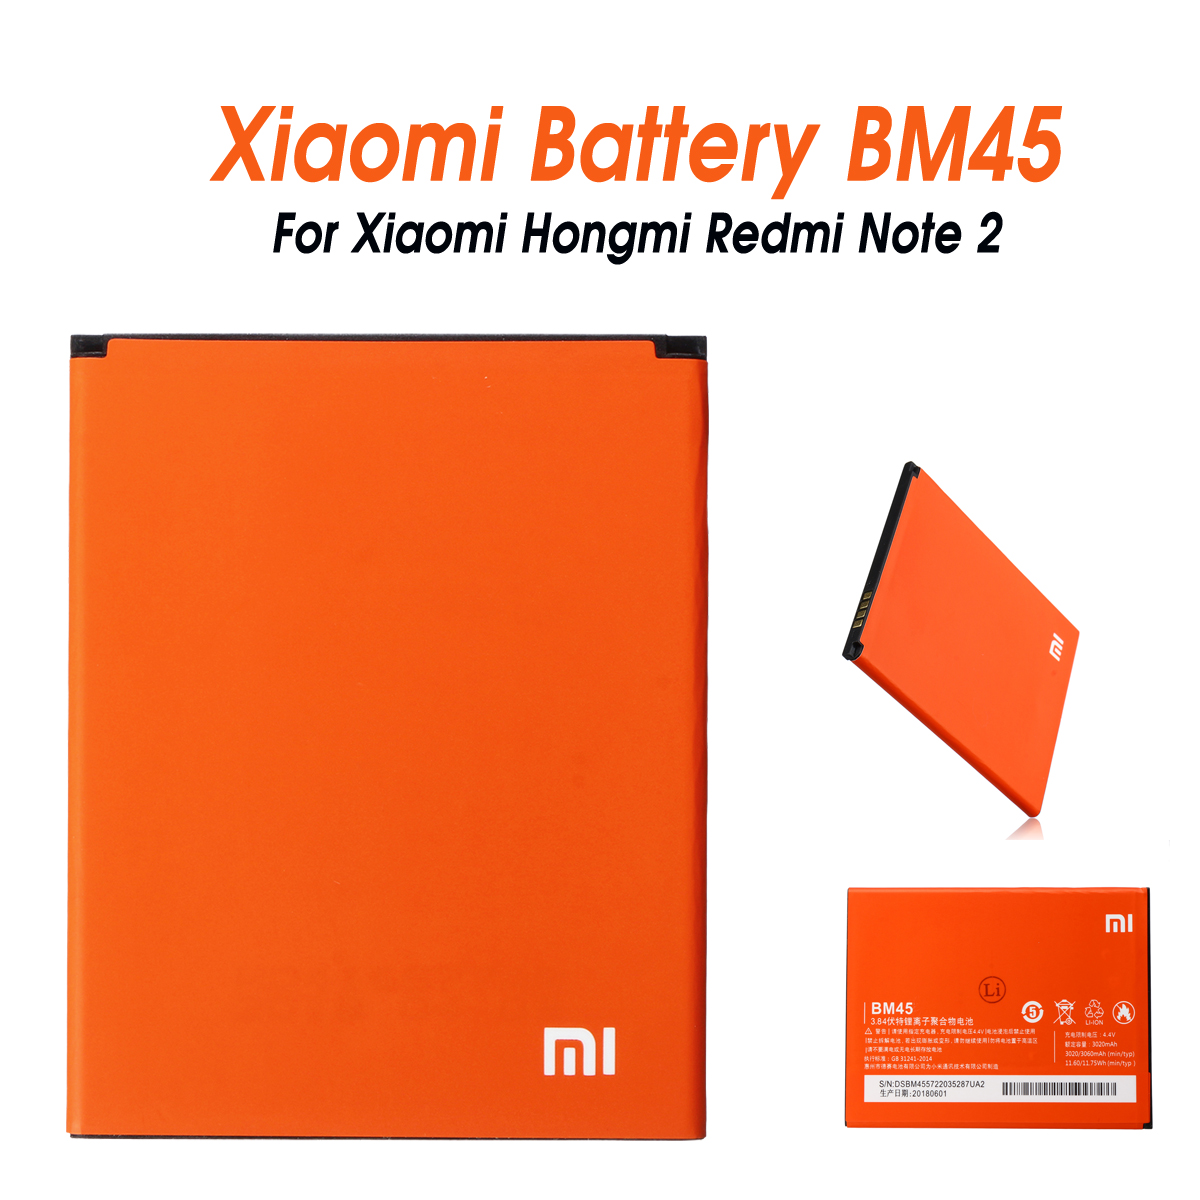 3020-mAh-Battery-Replacement-For-Xiaomi-Hongmi-Redmi-Note-2-1415169